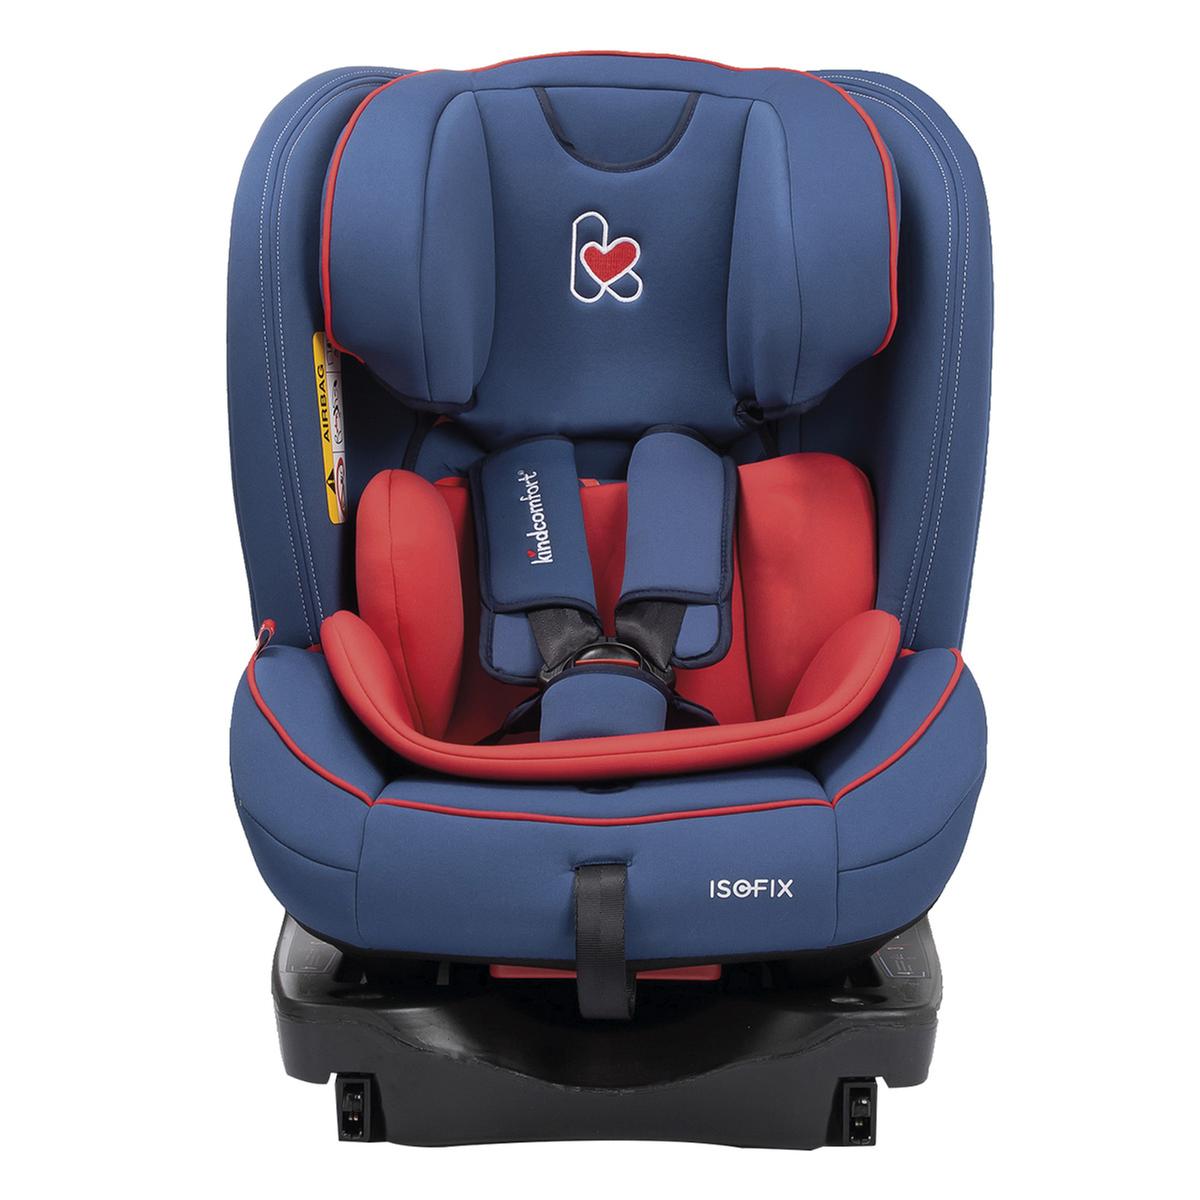 Kindcomfort - Cadeira Auto Grupo 0+-1-2-3 Infinity | Cadeiras Auto GRUPO 0+/ 1; 0+/1/2 Y 0+/1/ | Loja de brinquedos e videojogos Online Toysrus